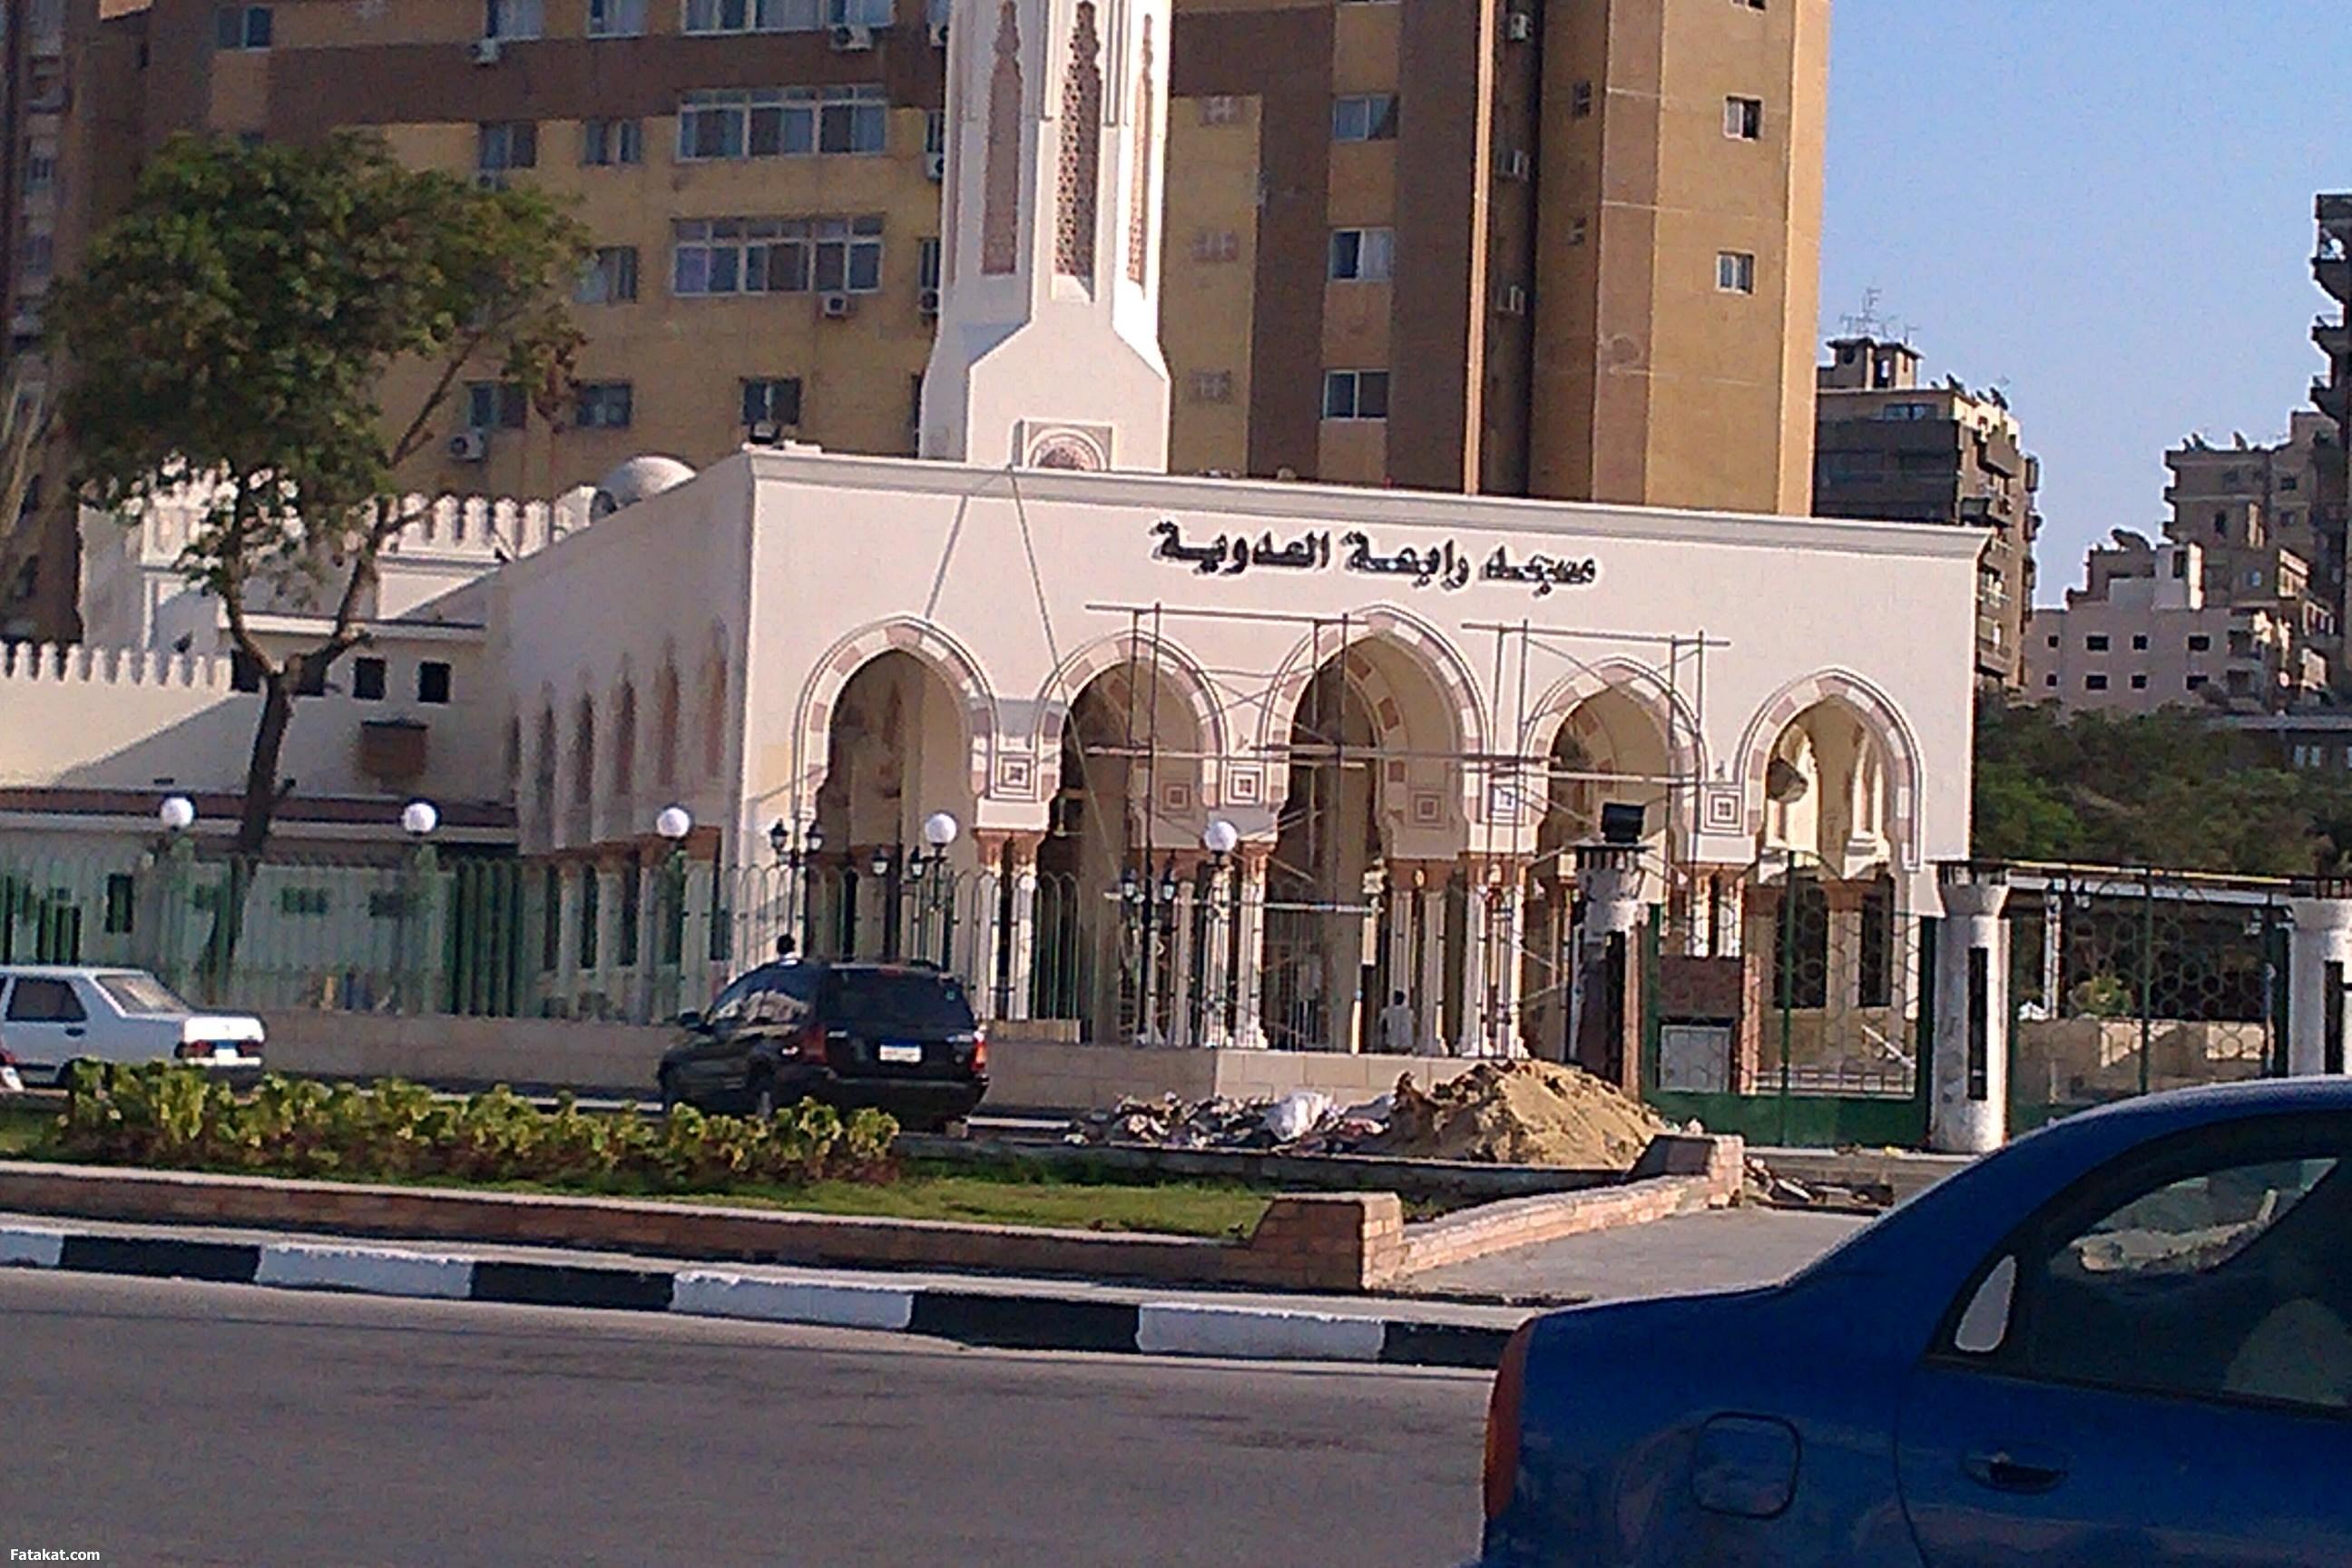 الأوقاف: تغيير اسم مسجد رابعة العدوية إلى “هشام بركات”